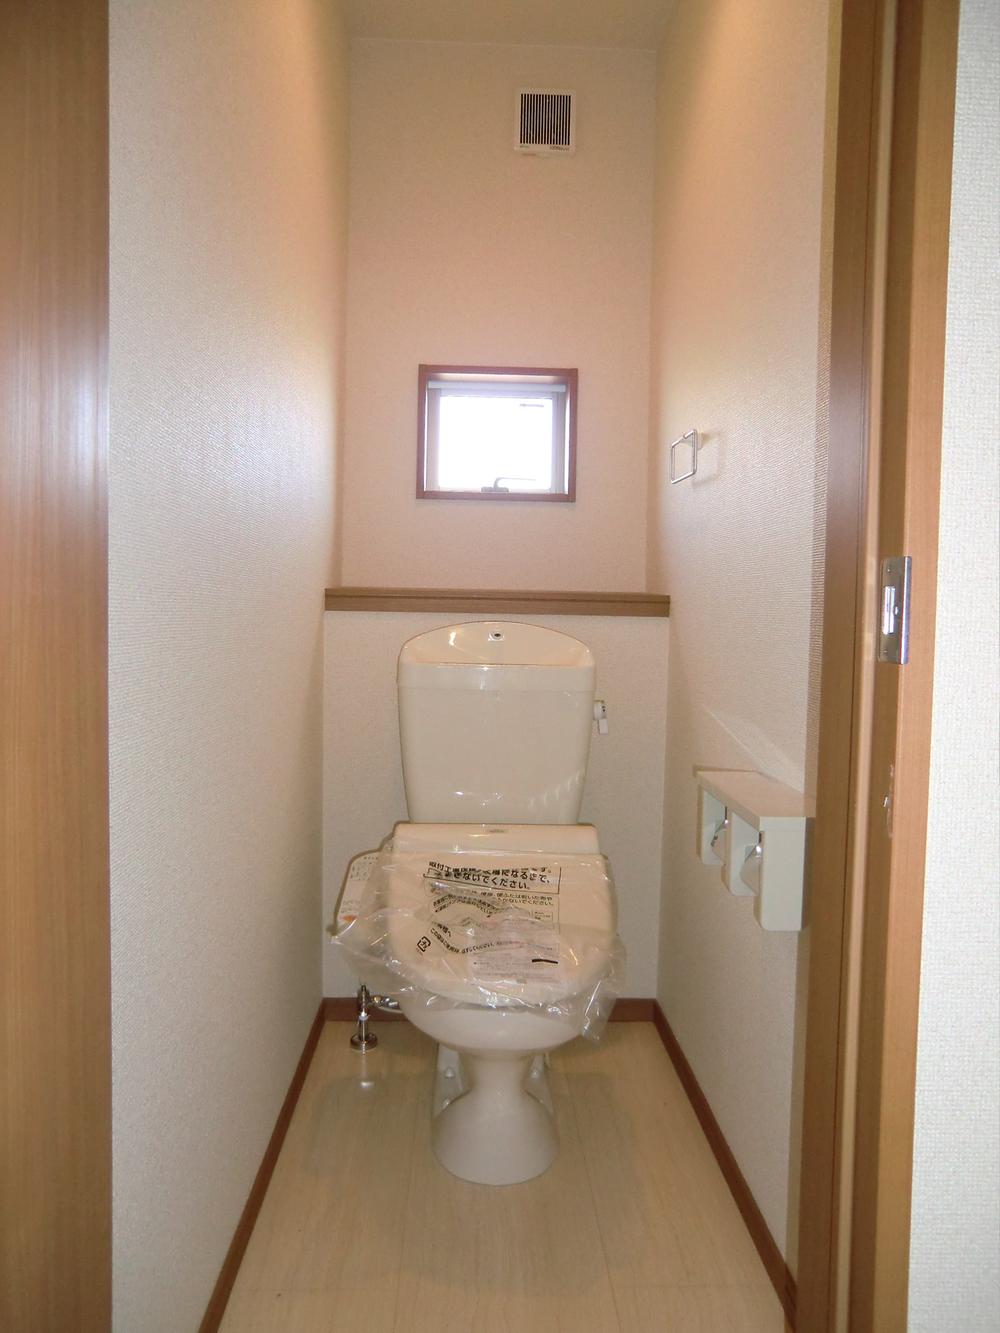 Toilet. ◇ toilet ◇  1st floor ・ Second floor  Bidet